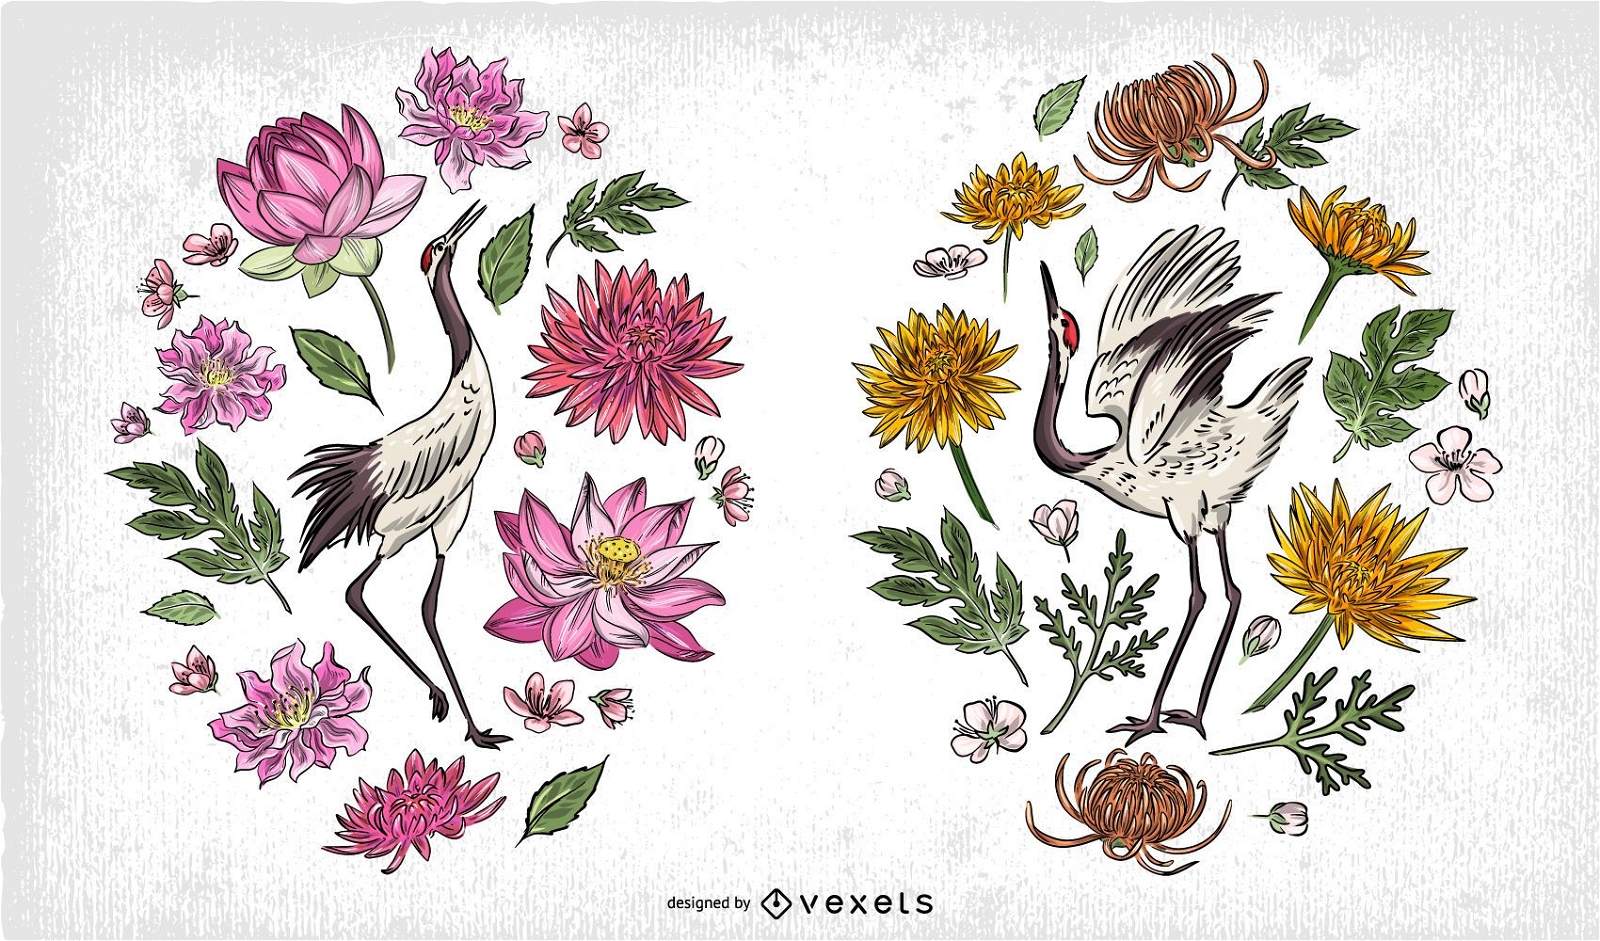 Composição de ilustração de pássaros chineses